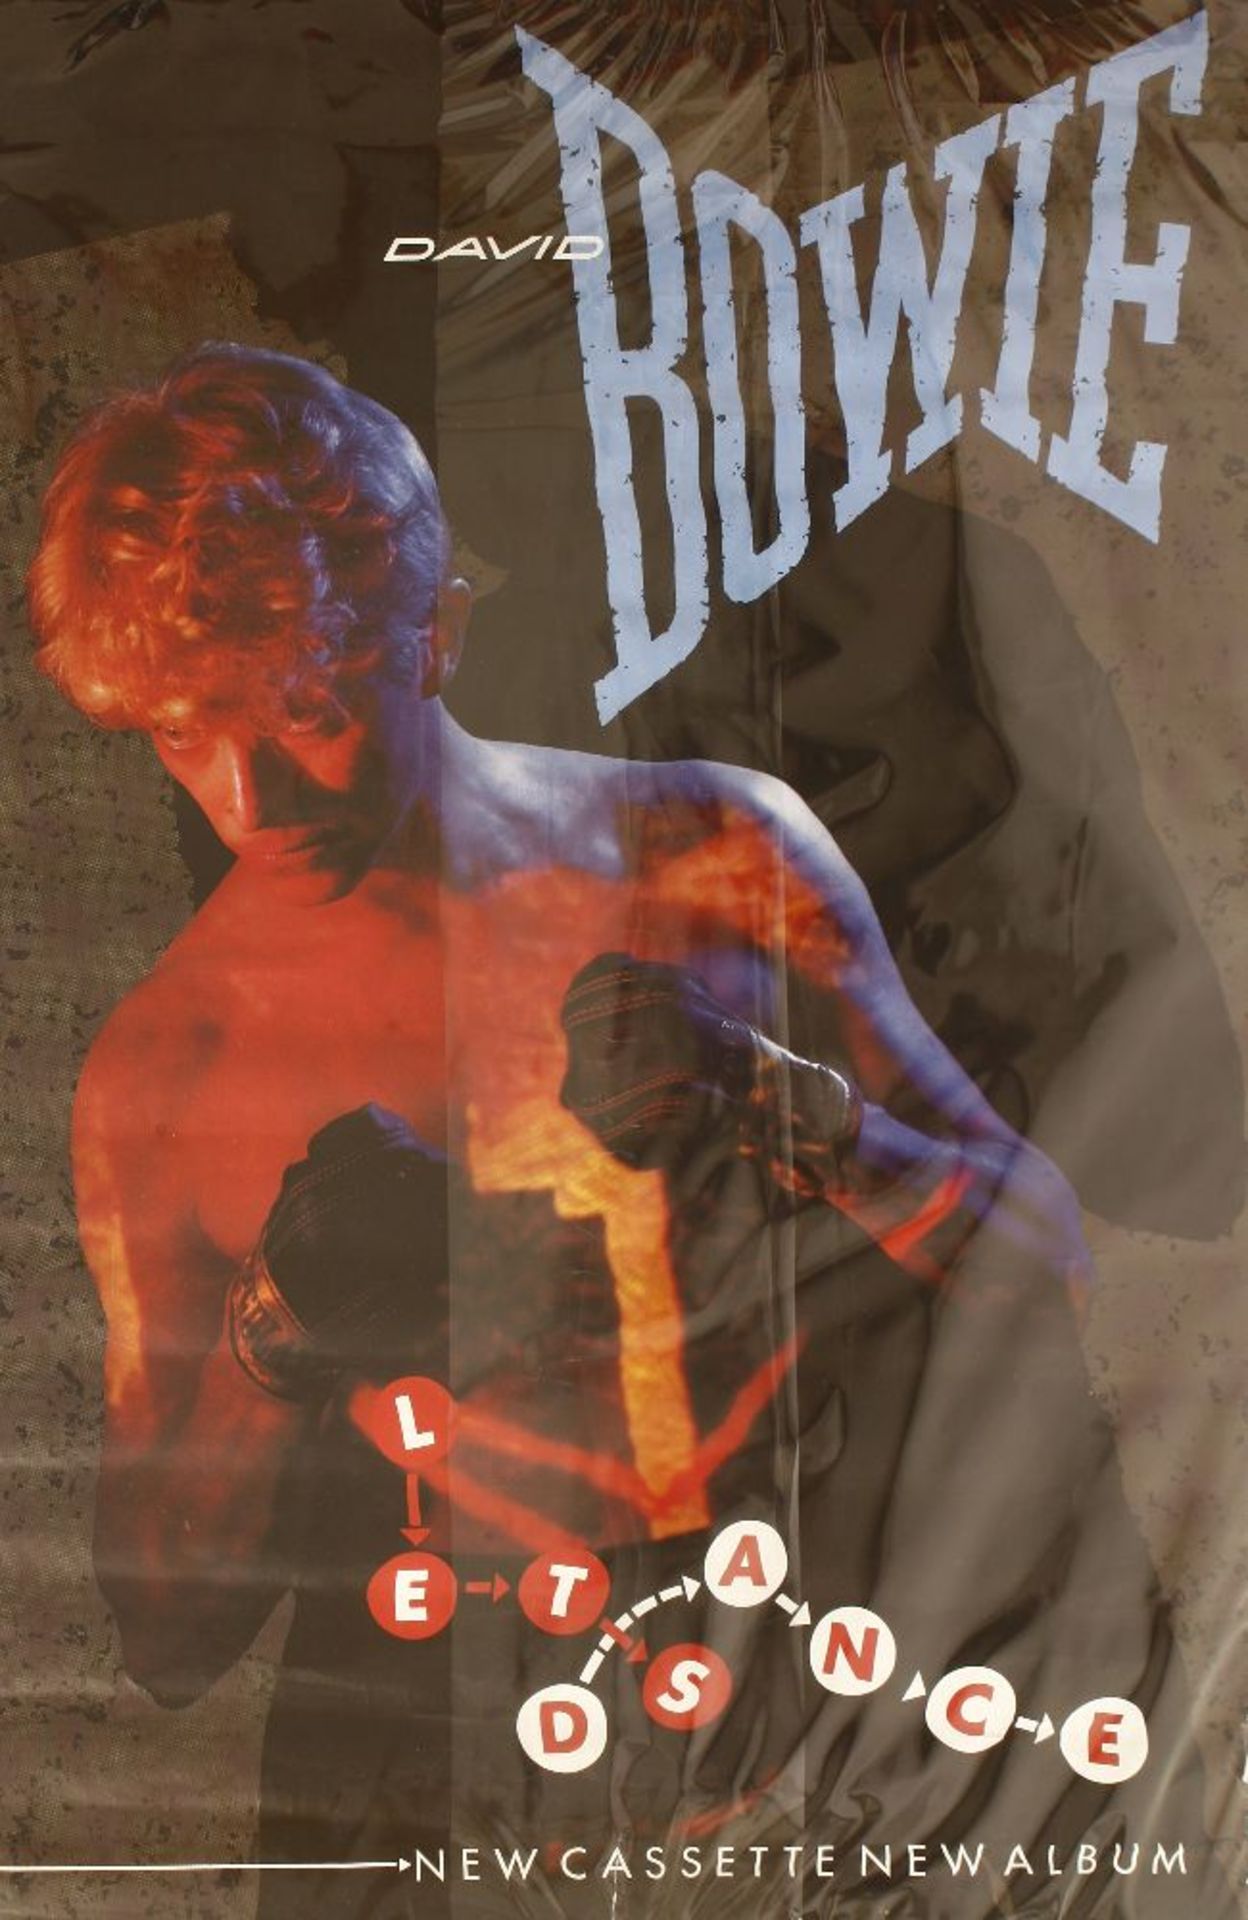 'Let's Dance - New Cassette Album',a colour David Bowie poster,103 x 151cm